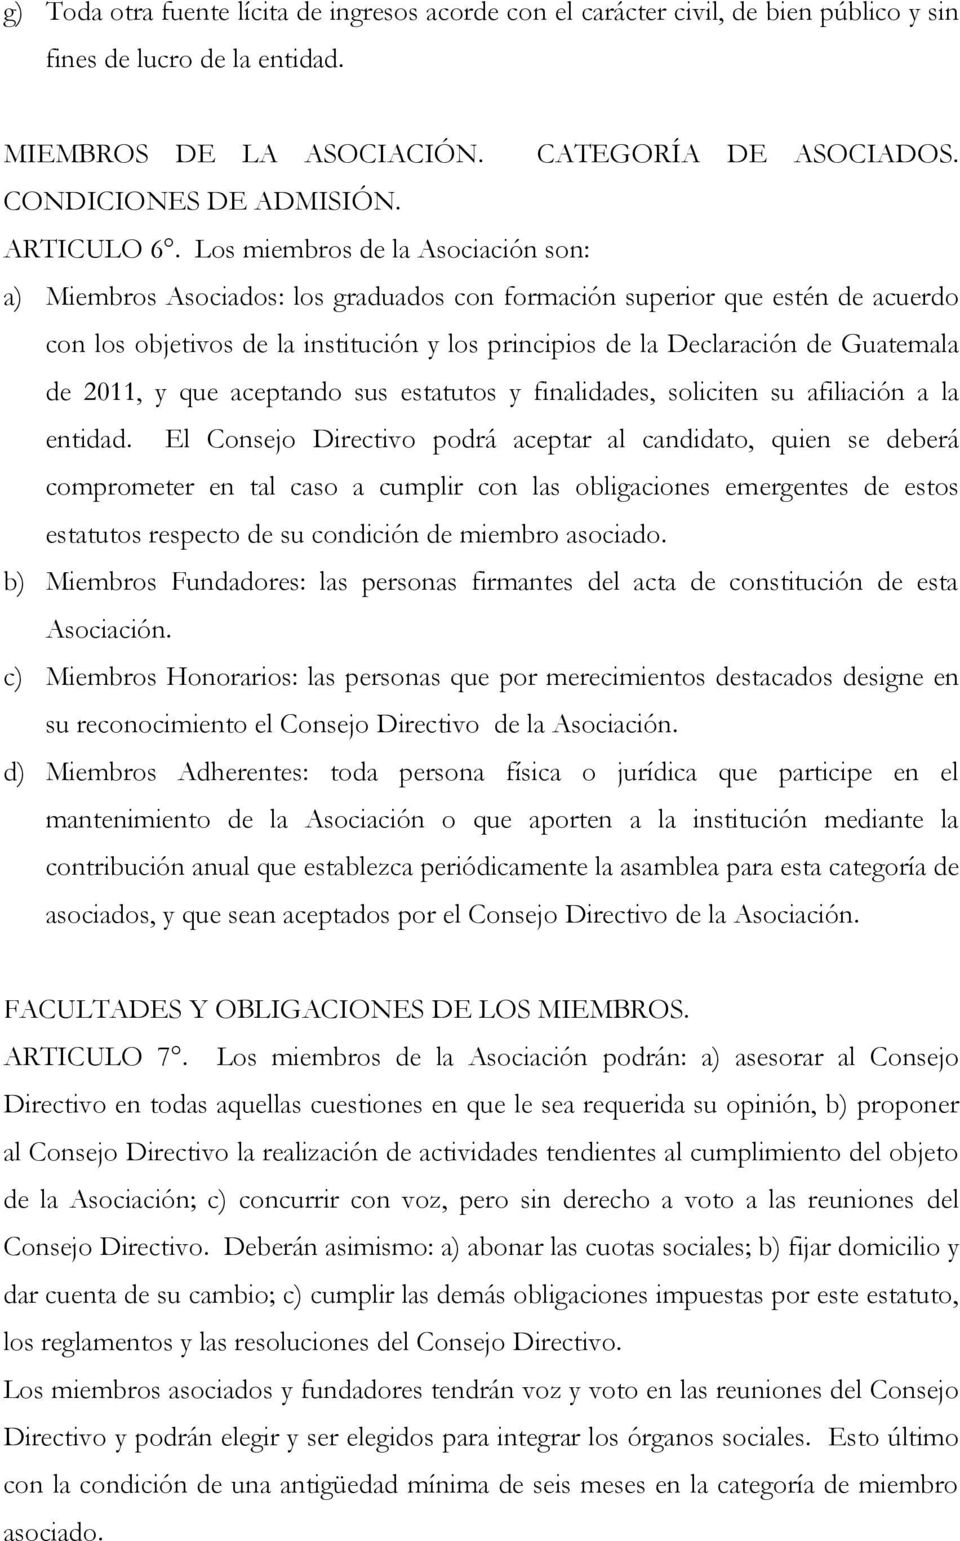 Los miembros de la Asociación son: a) Miembros Asociados: los graduados con formación superior que estén de acuerdo con los objetivos de la institución y los principios de la Declaración de Guatemala